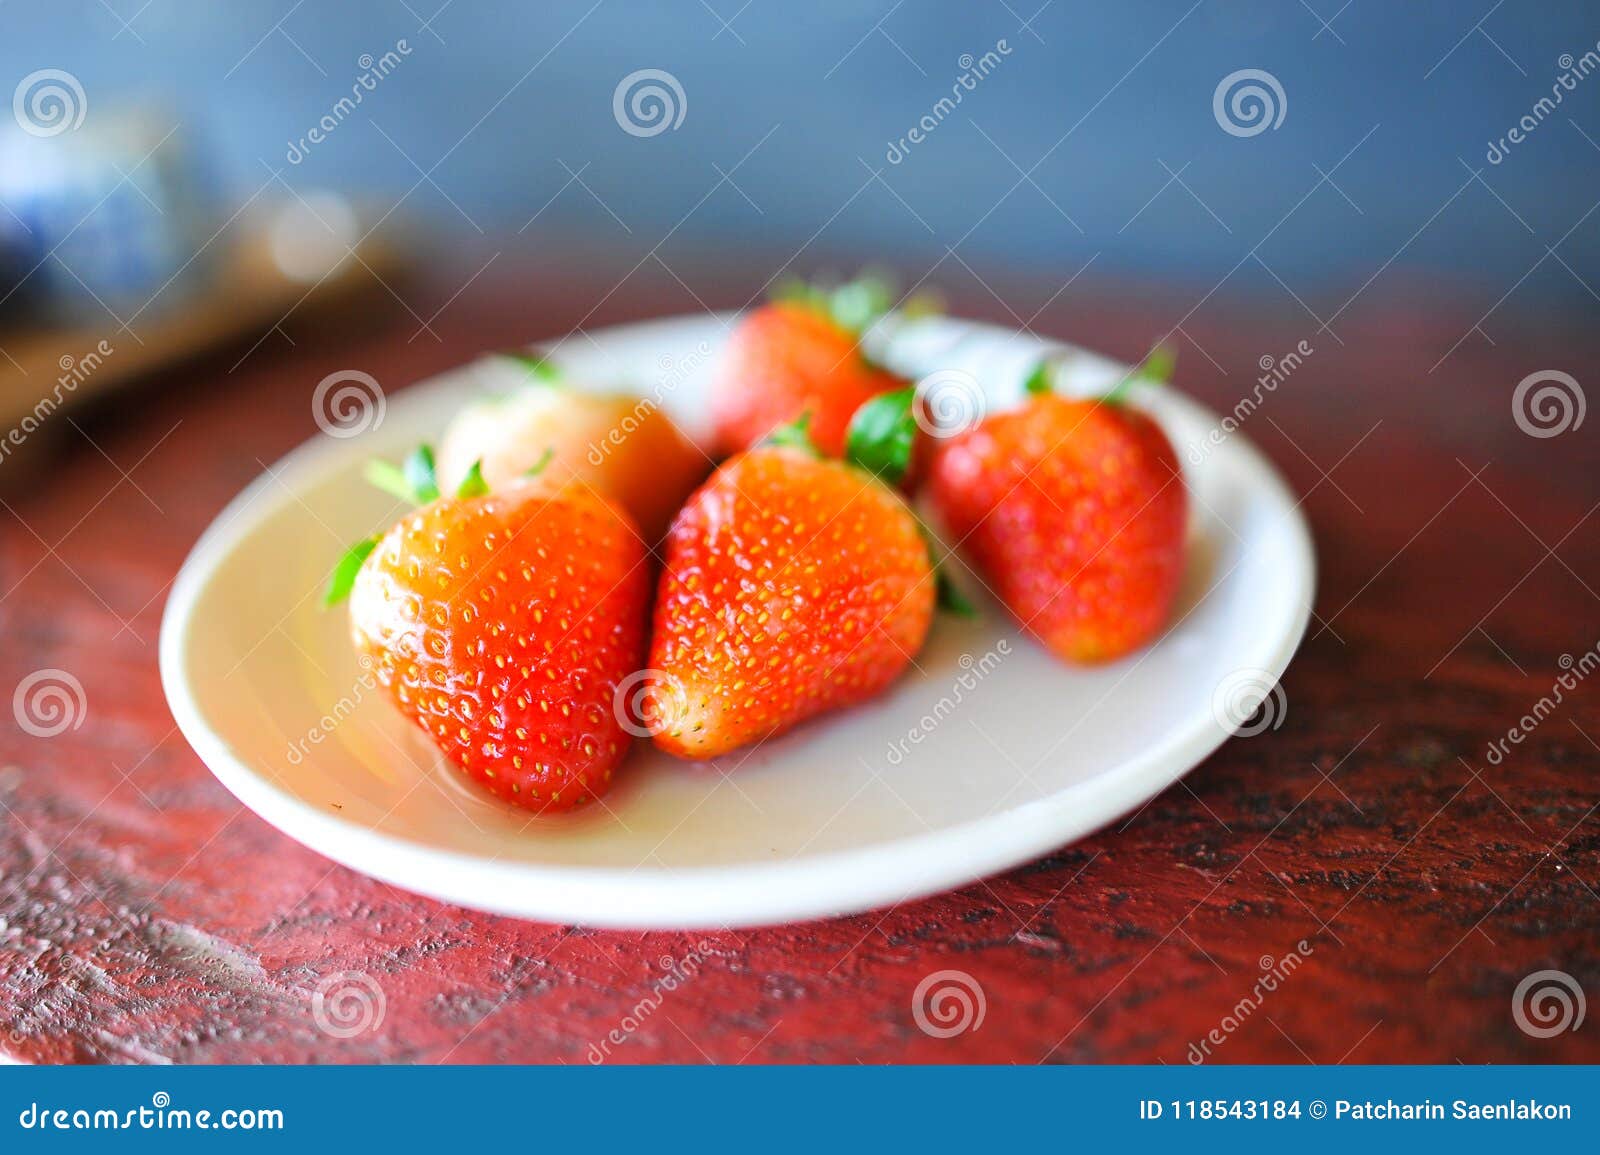 strawberries from the freshest fresh garden.